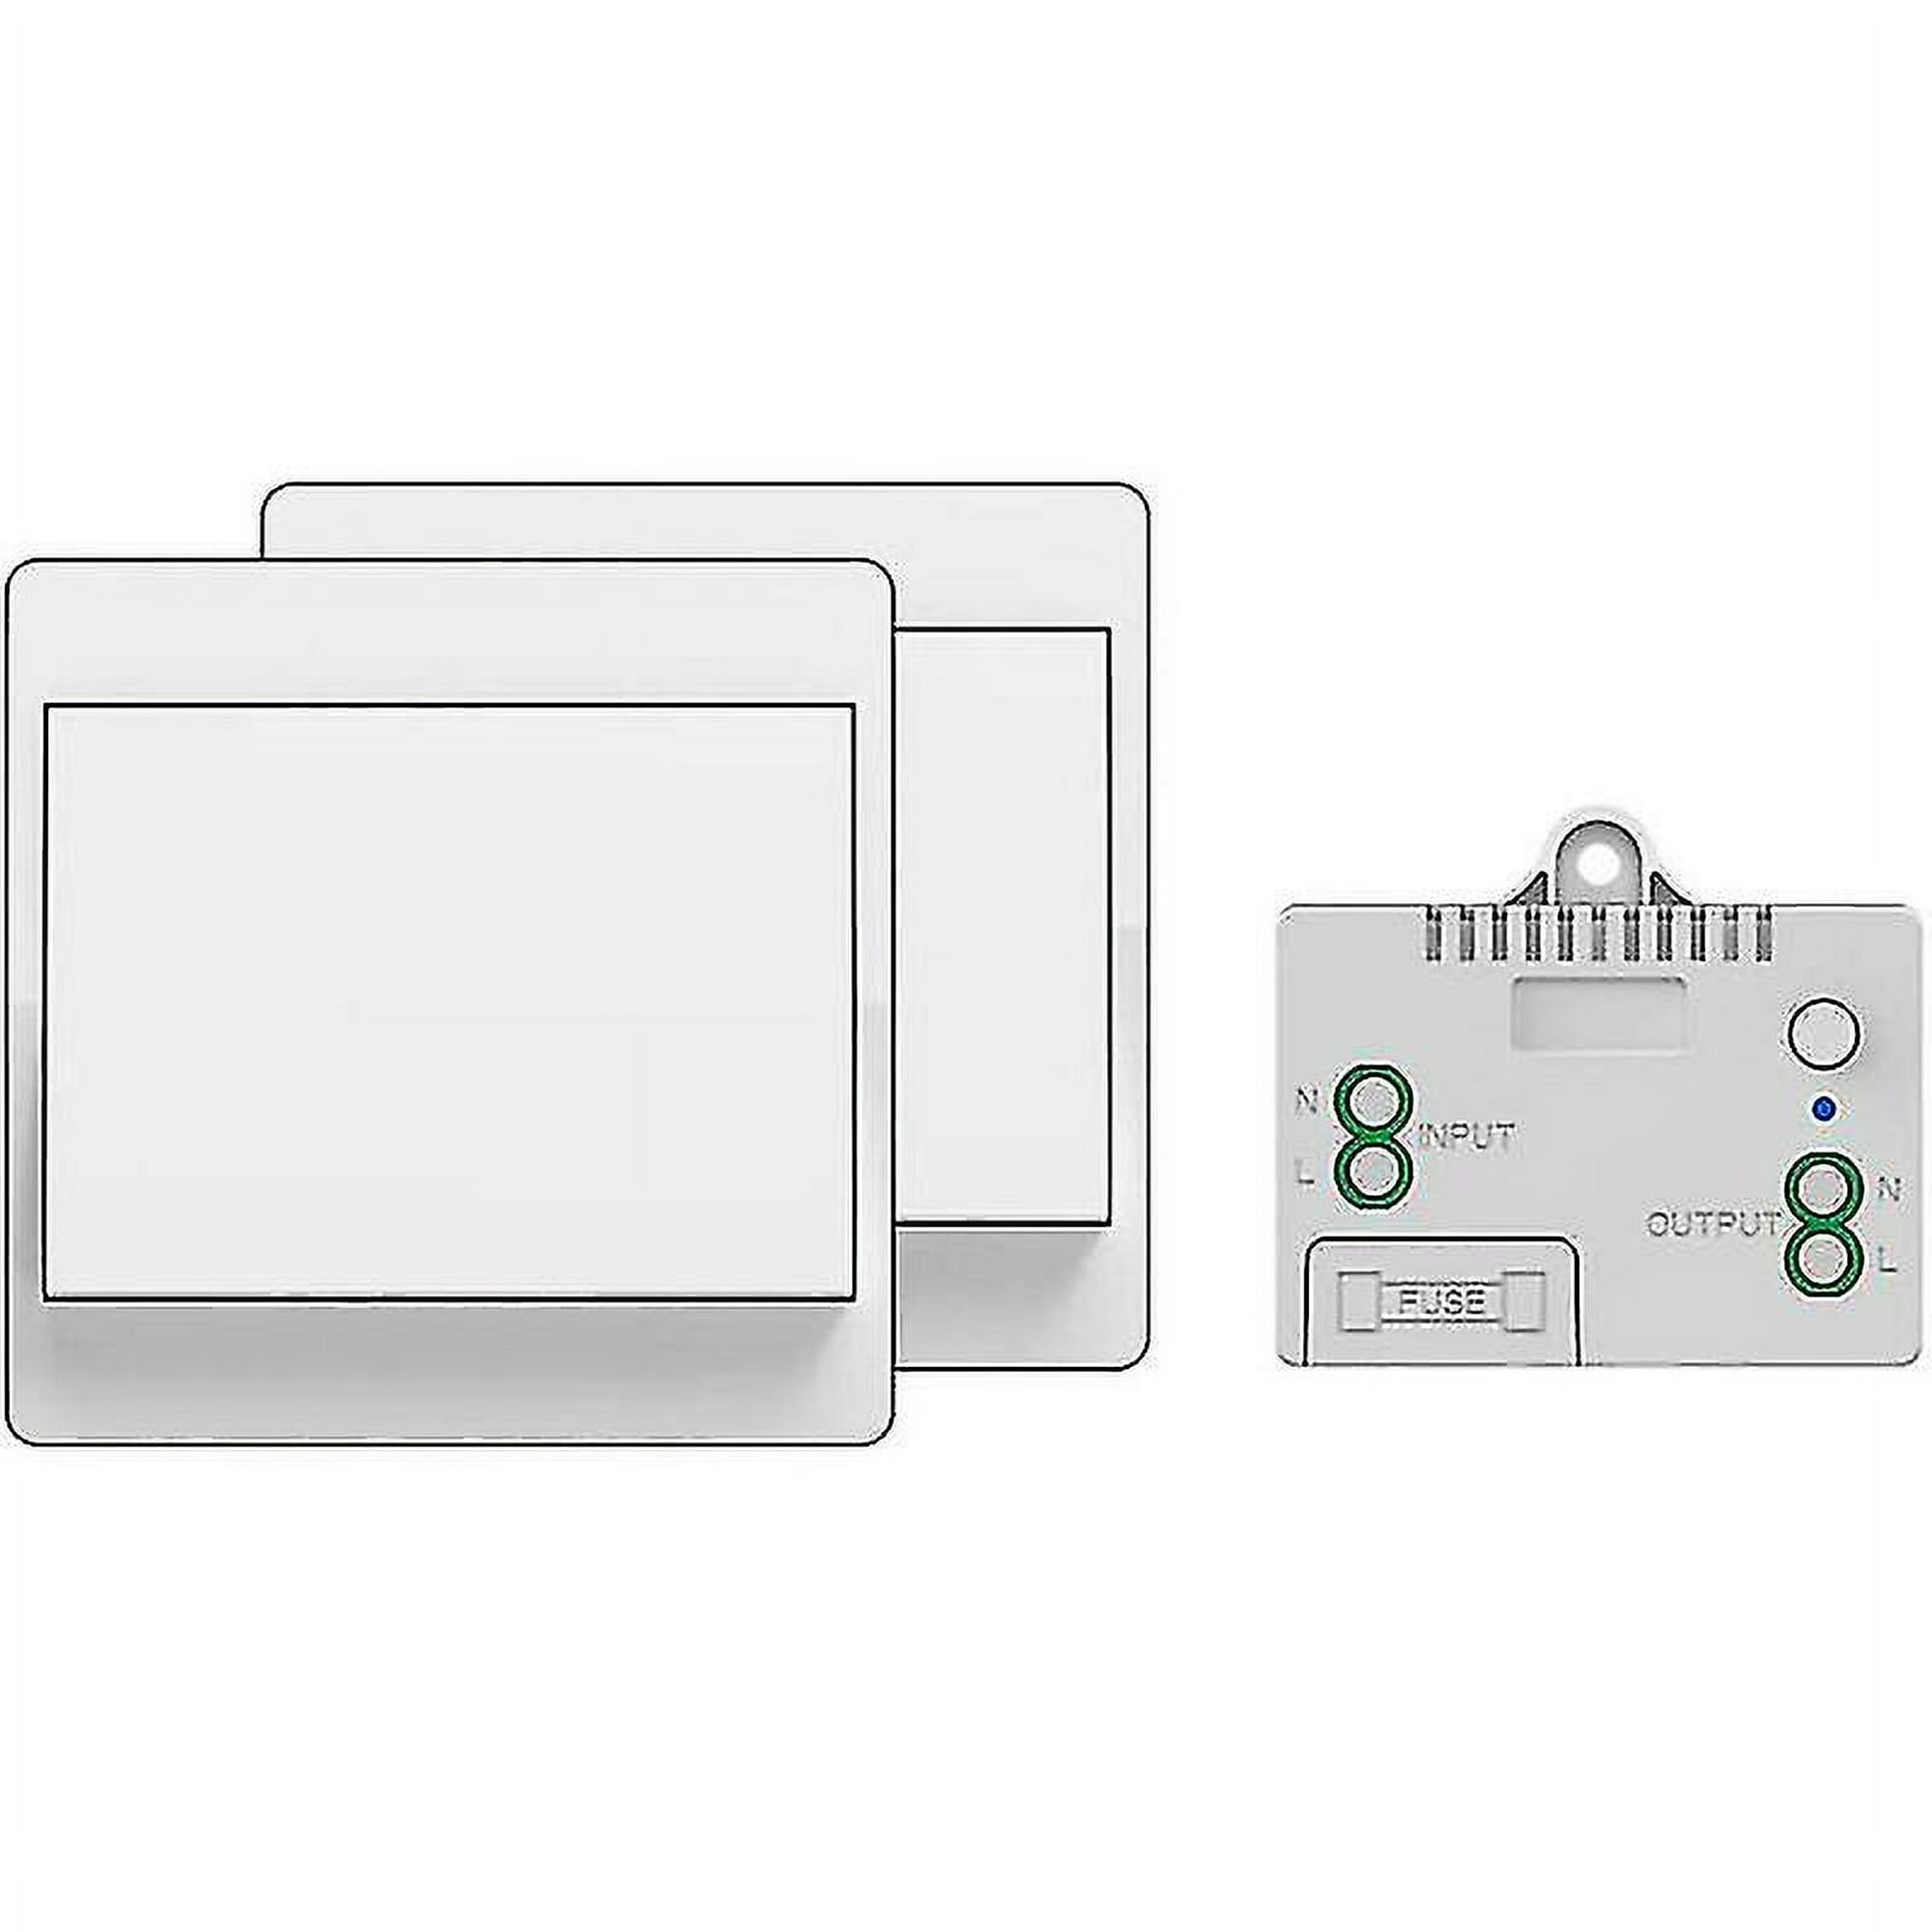 Interruptor inalámbrico autoalimentado, sin batería, control remoto  inalámbrico para luces y electrodomésticos, resistente al agua y seguro, se  puede instalar directamente en un baño, etc. (1 TB 1)